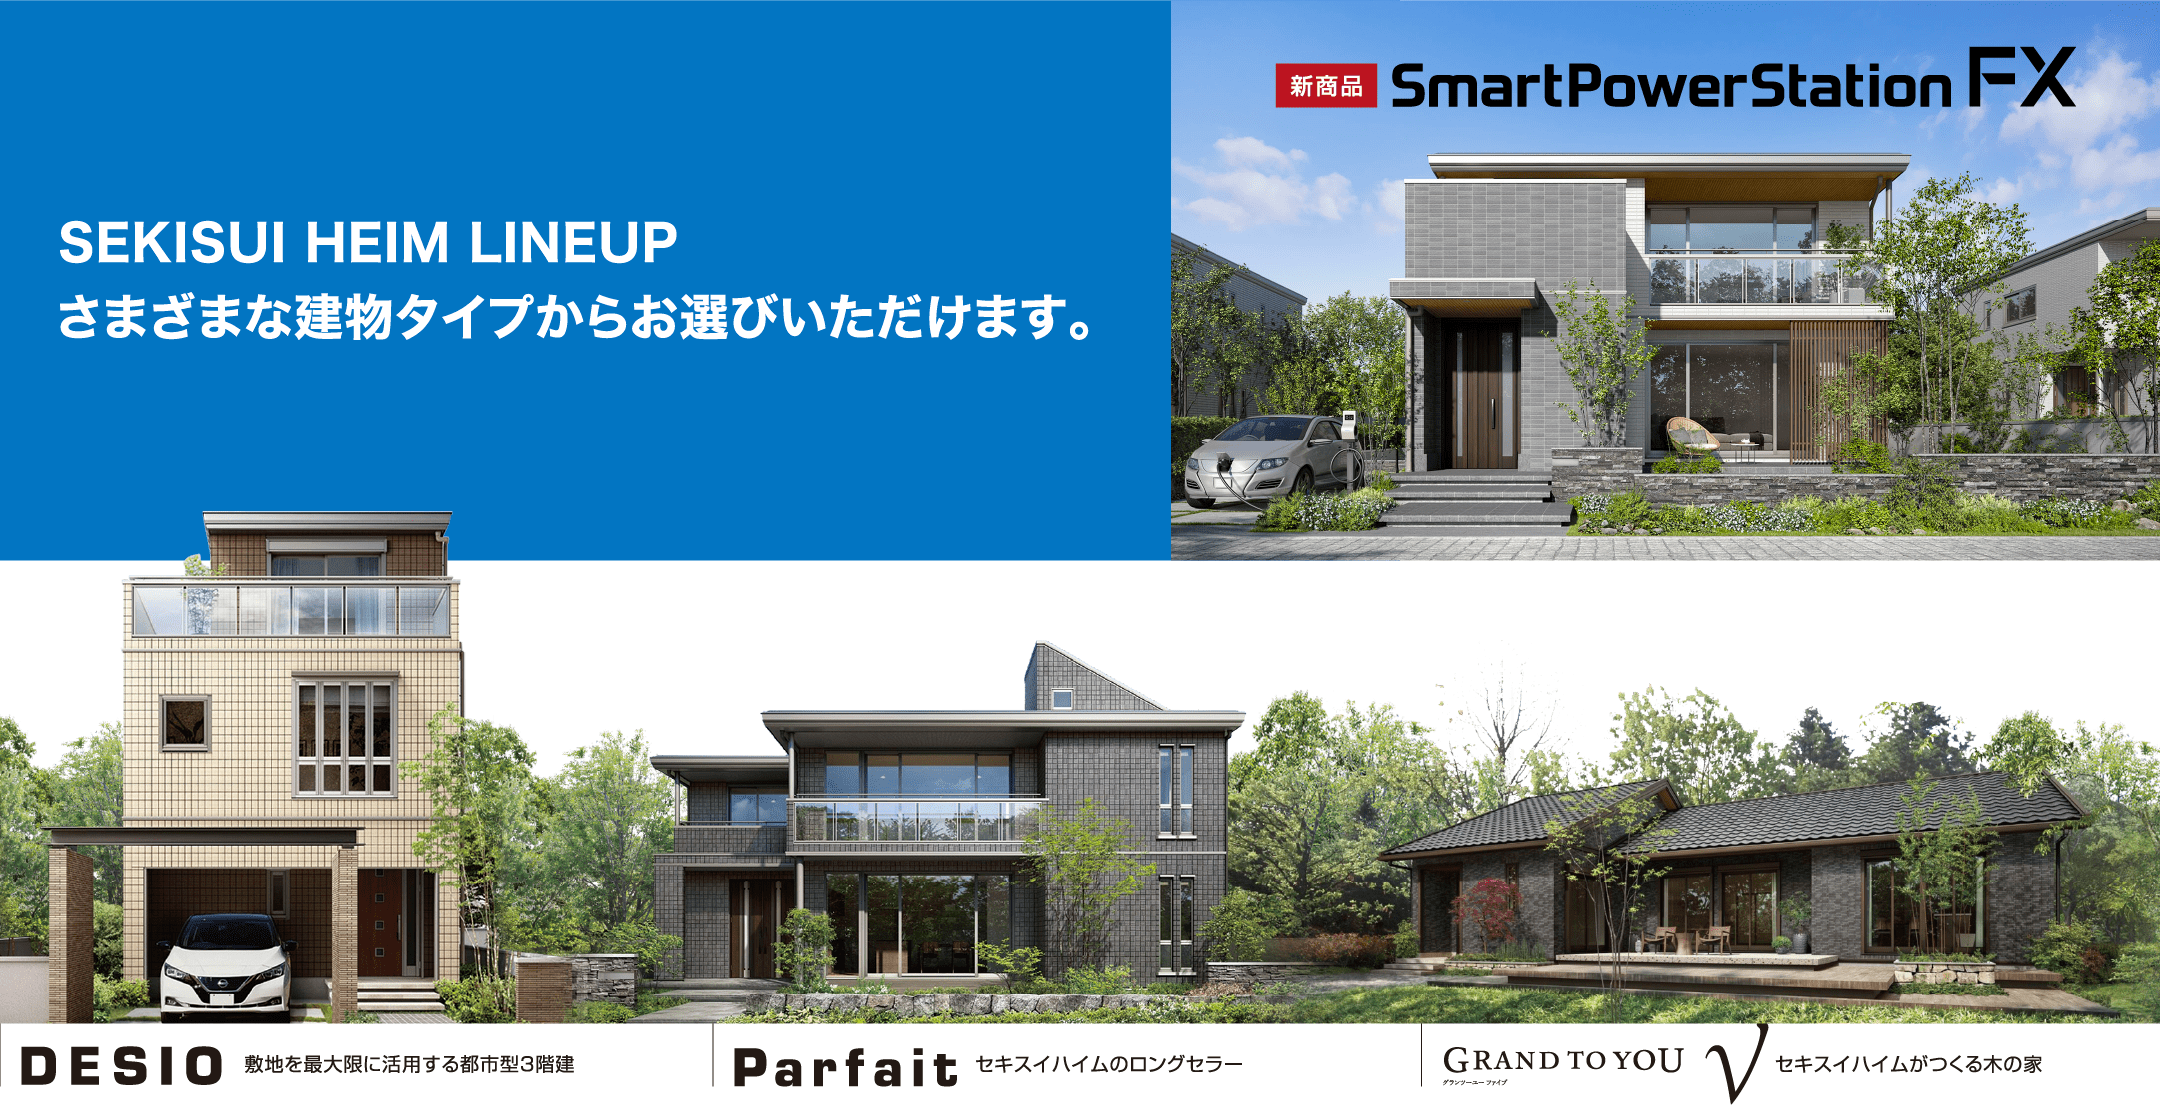 SEKISUI HEIM LINEUP さまざまな建物タイプからお選びいただけます。